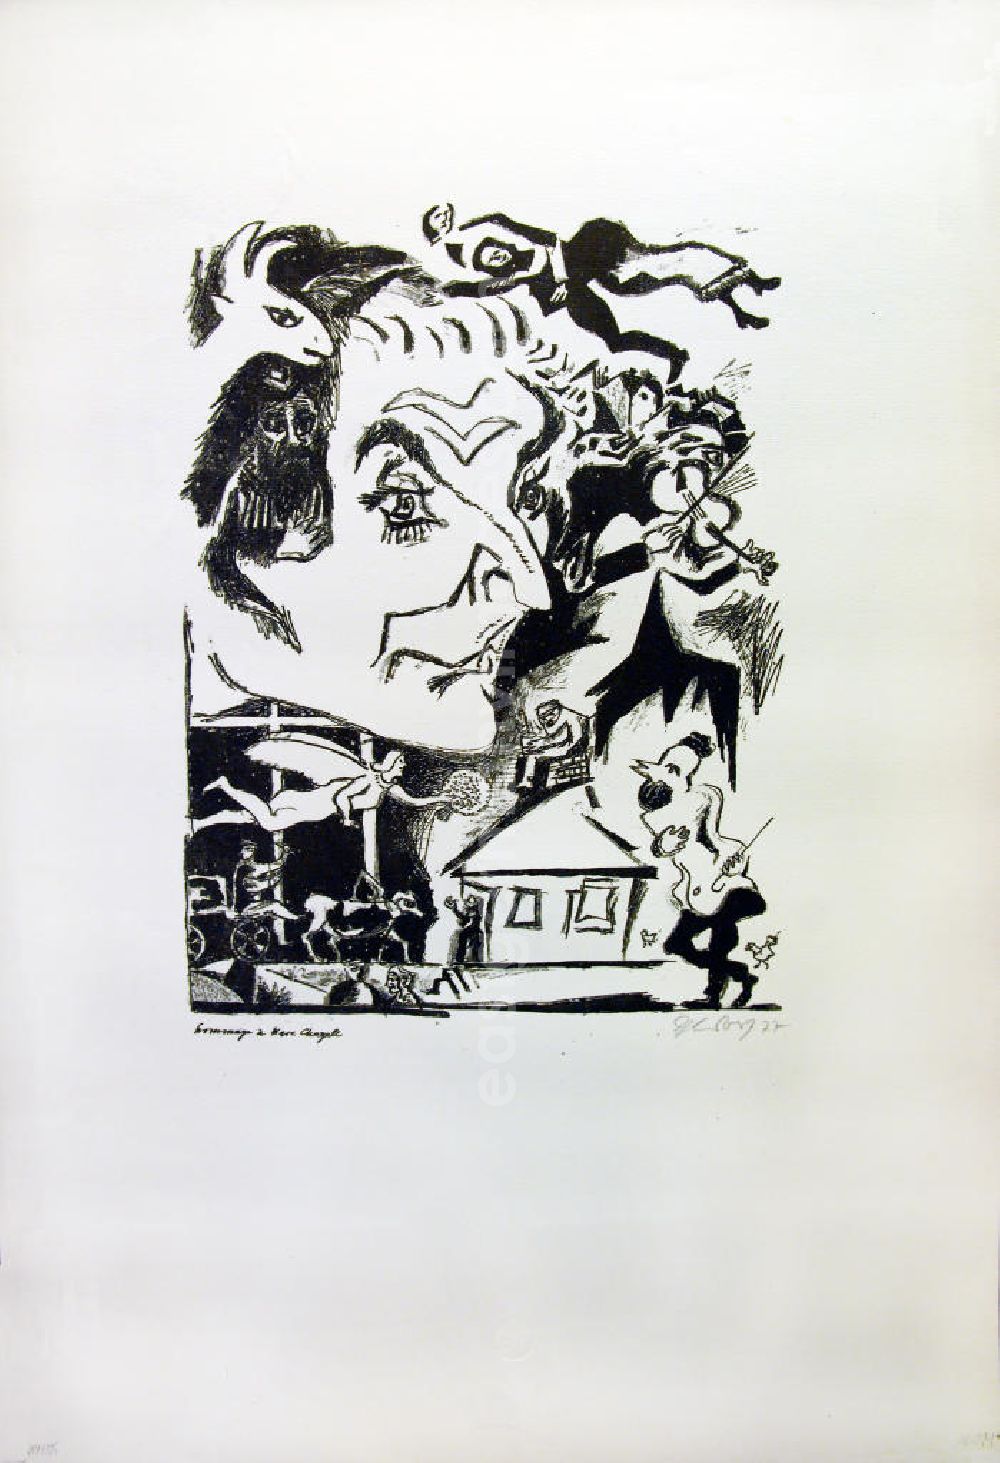 GDR picture archive: Berlin - Grafik von Herbert Sandberg Hommage à Marc Chagall aus dem Jahr 1977, 29,